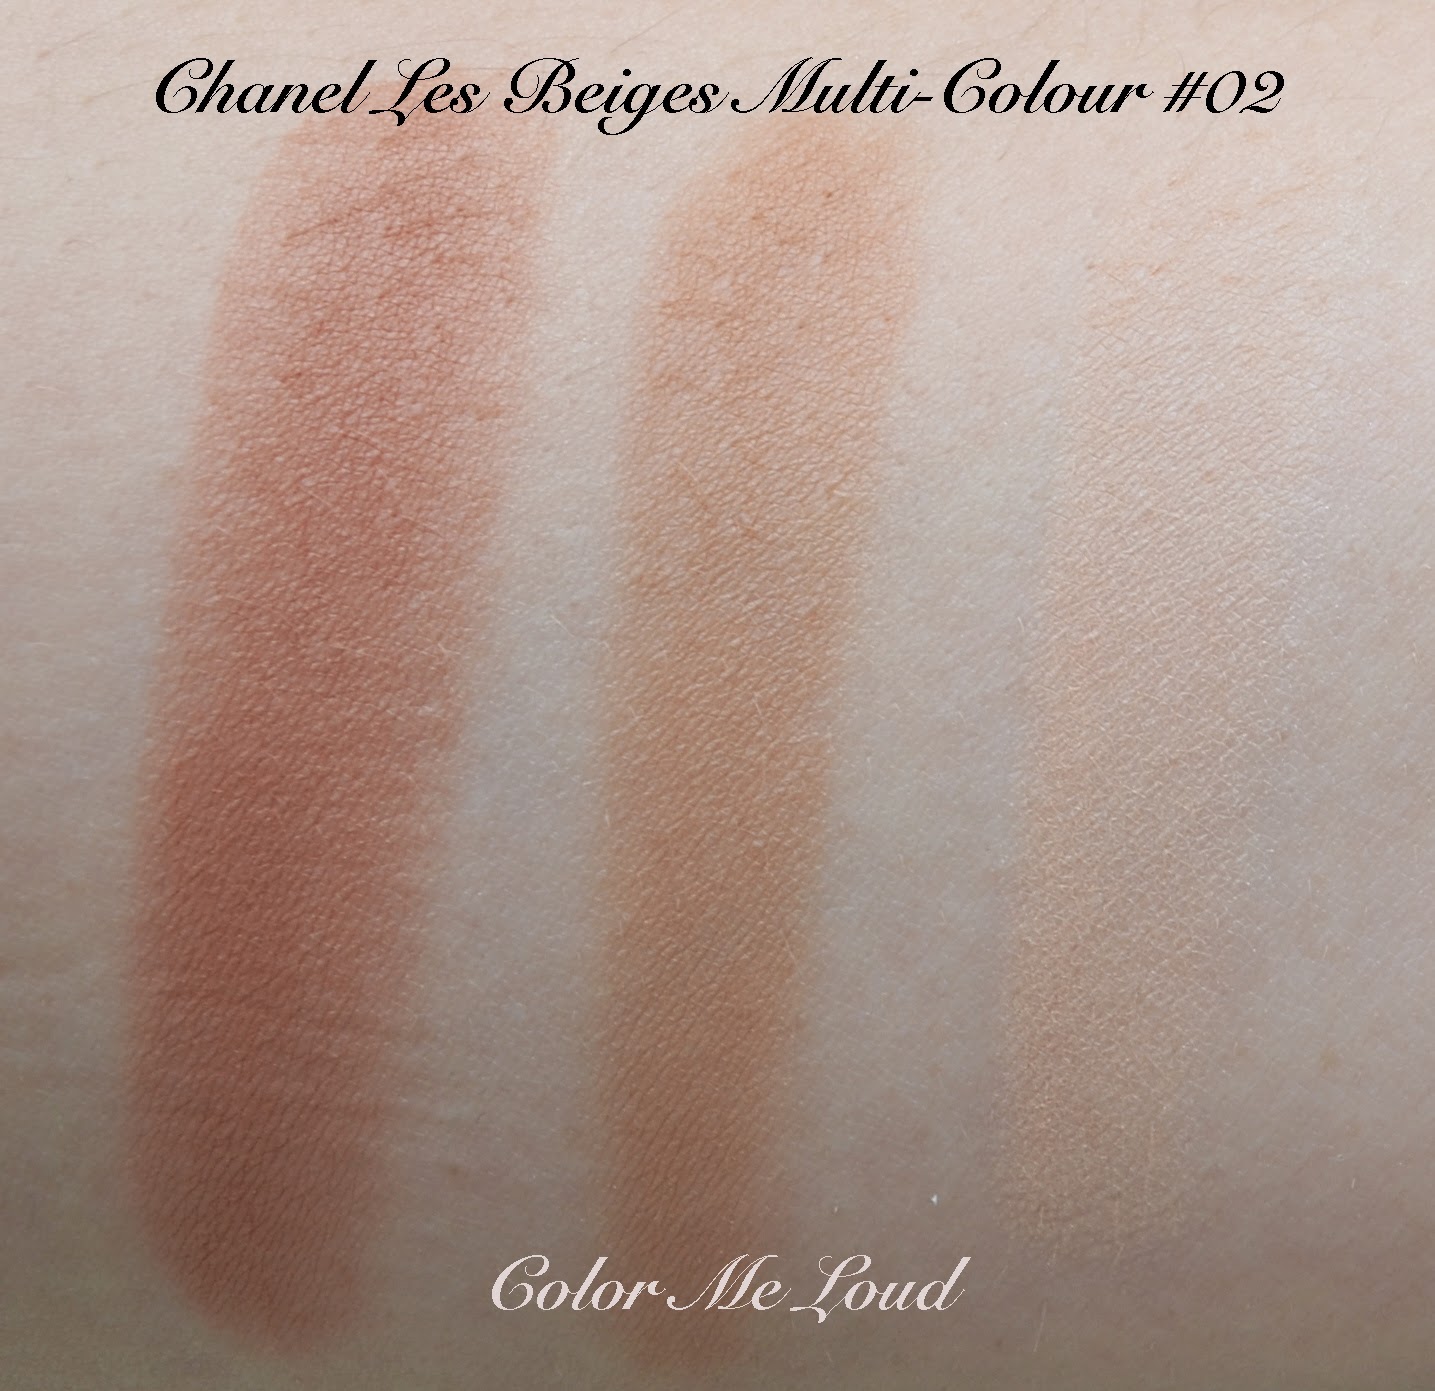 Chanel Les Beiges Healthy Glow Multi Colour No 02 : Review, Photos